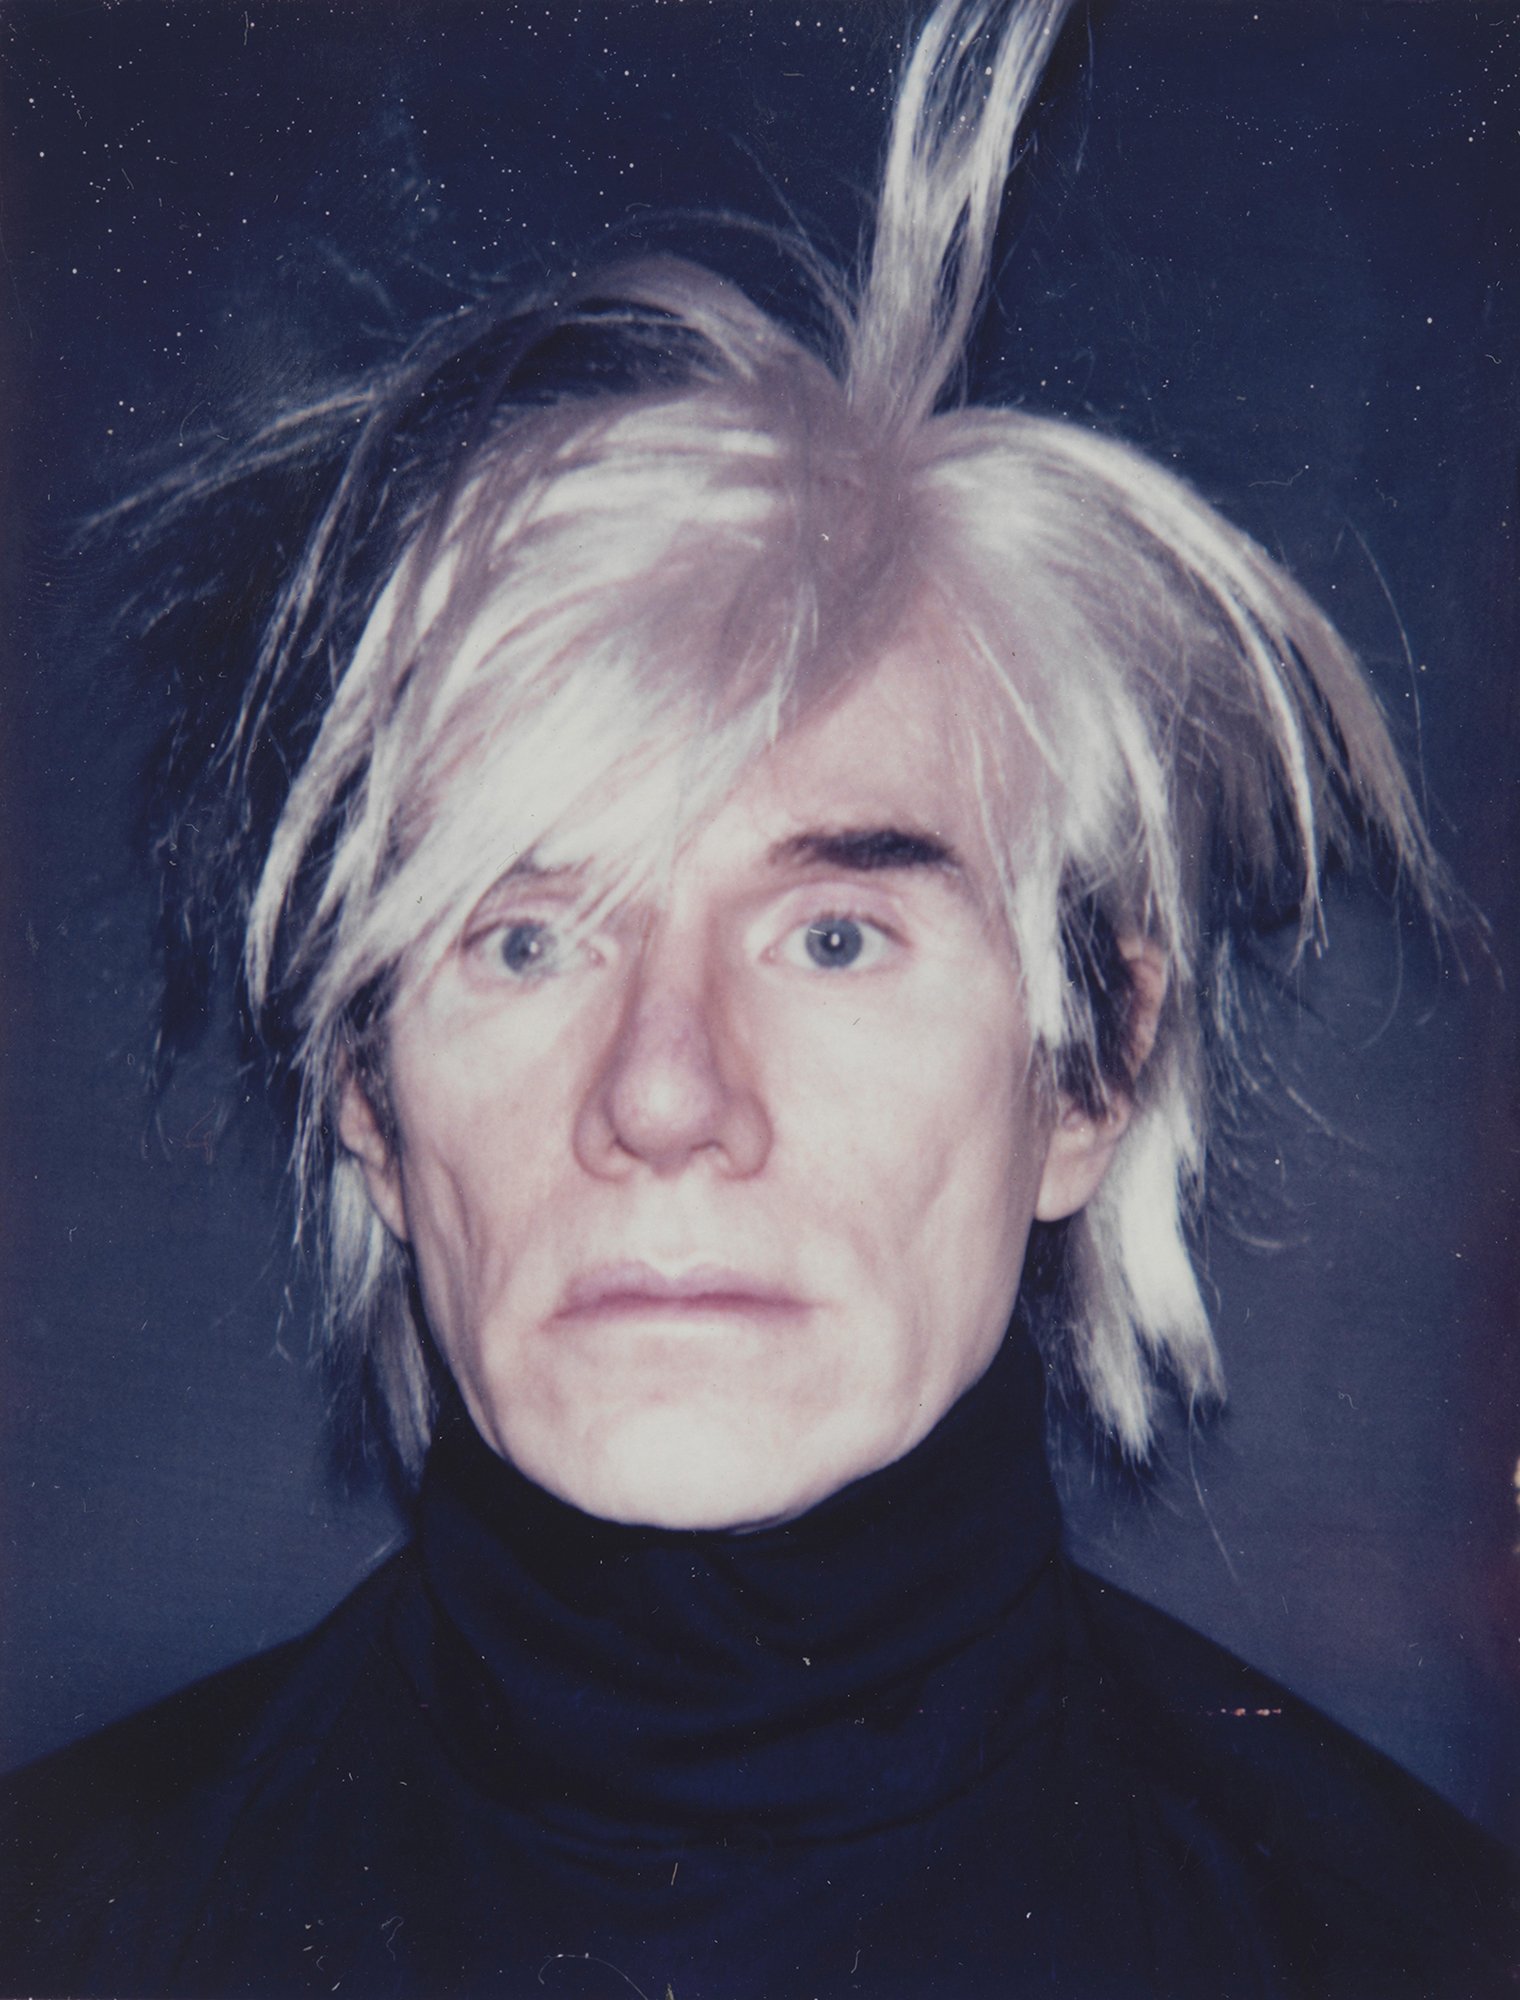 Selbstporträt von Andy Warhol aus dem Jahr 1986, das in der Ausstellung "Ich bin hier" vom 31. Oktober 2015 bis 31. Januar 2016 in der Staatlichen Kunsthalle Karlsruhe zu sehen war.